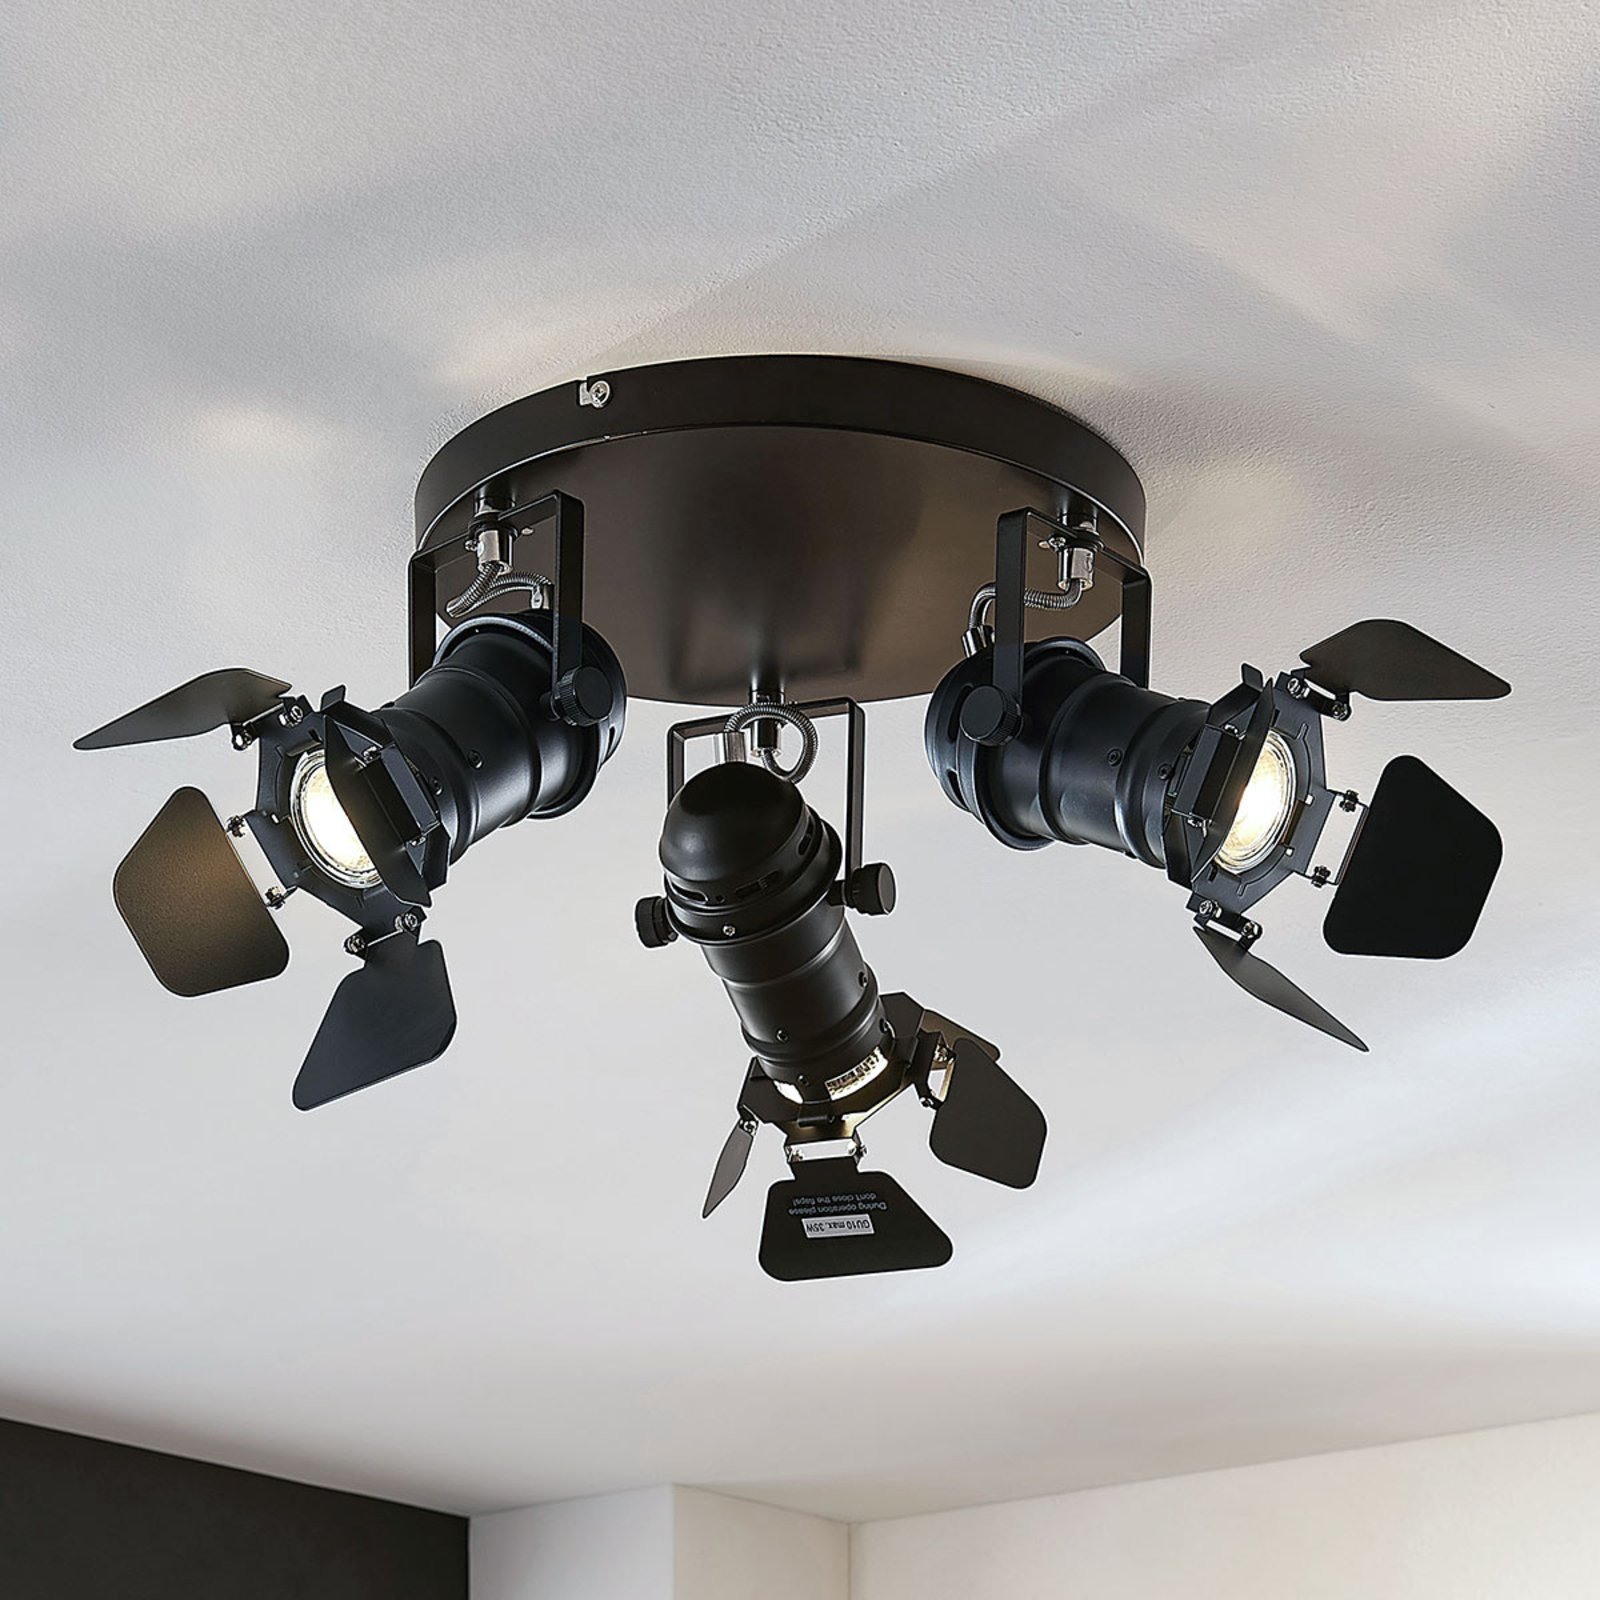 Tilen ceiling light, 3-bulb spotlight design